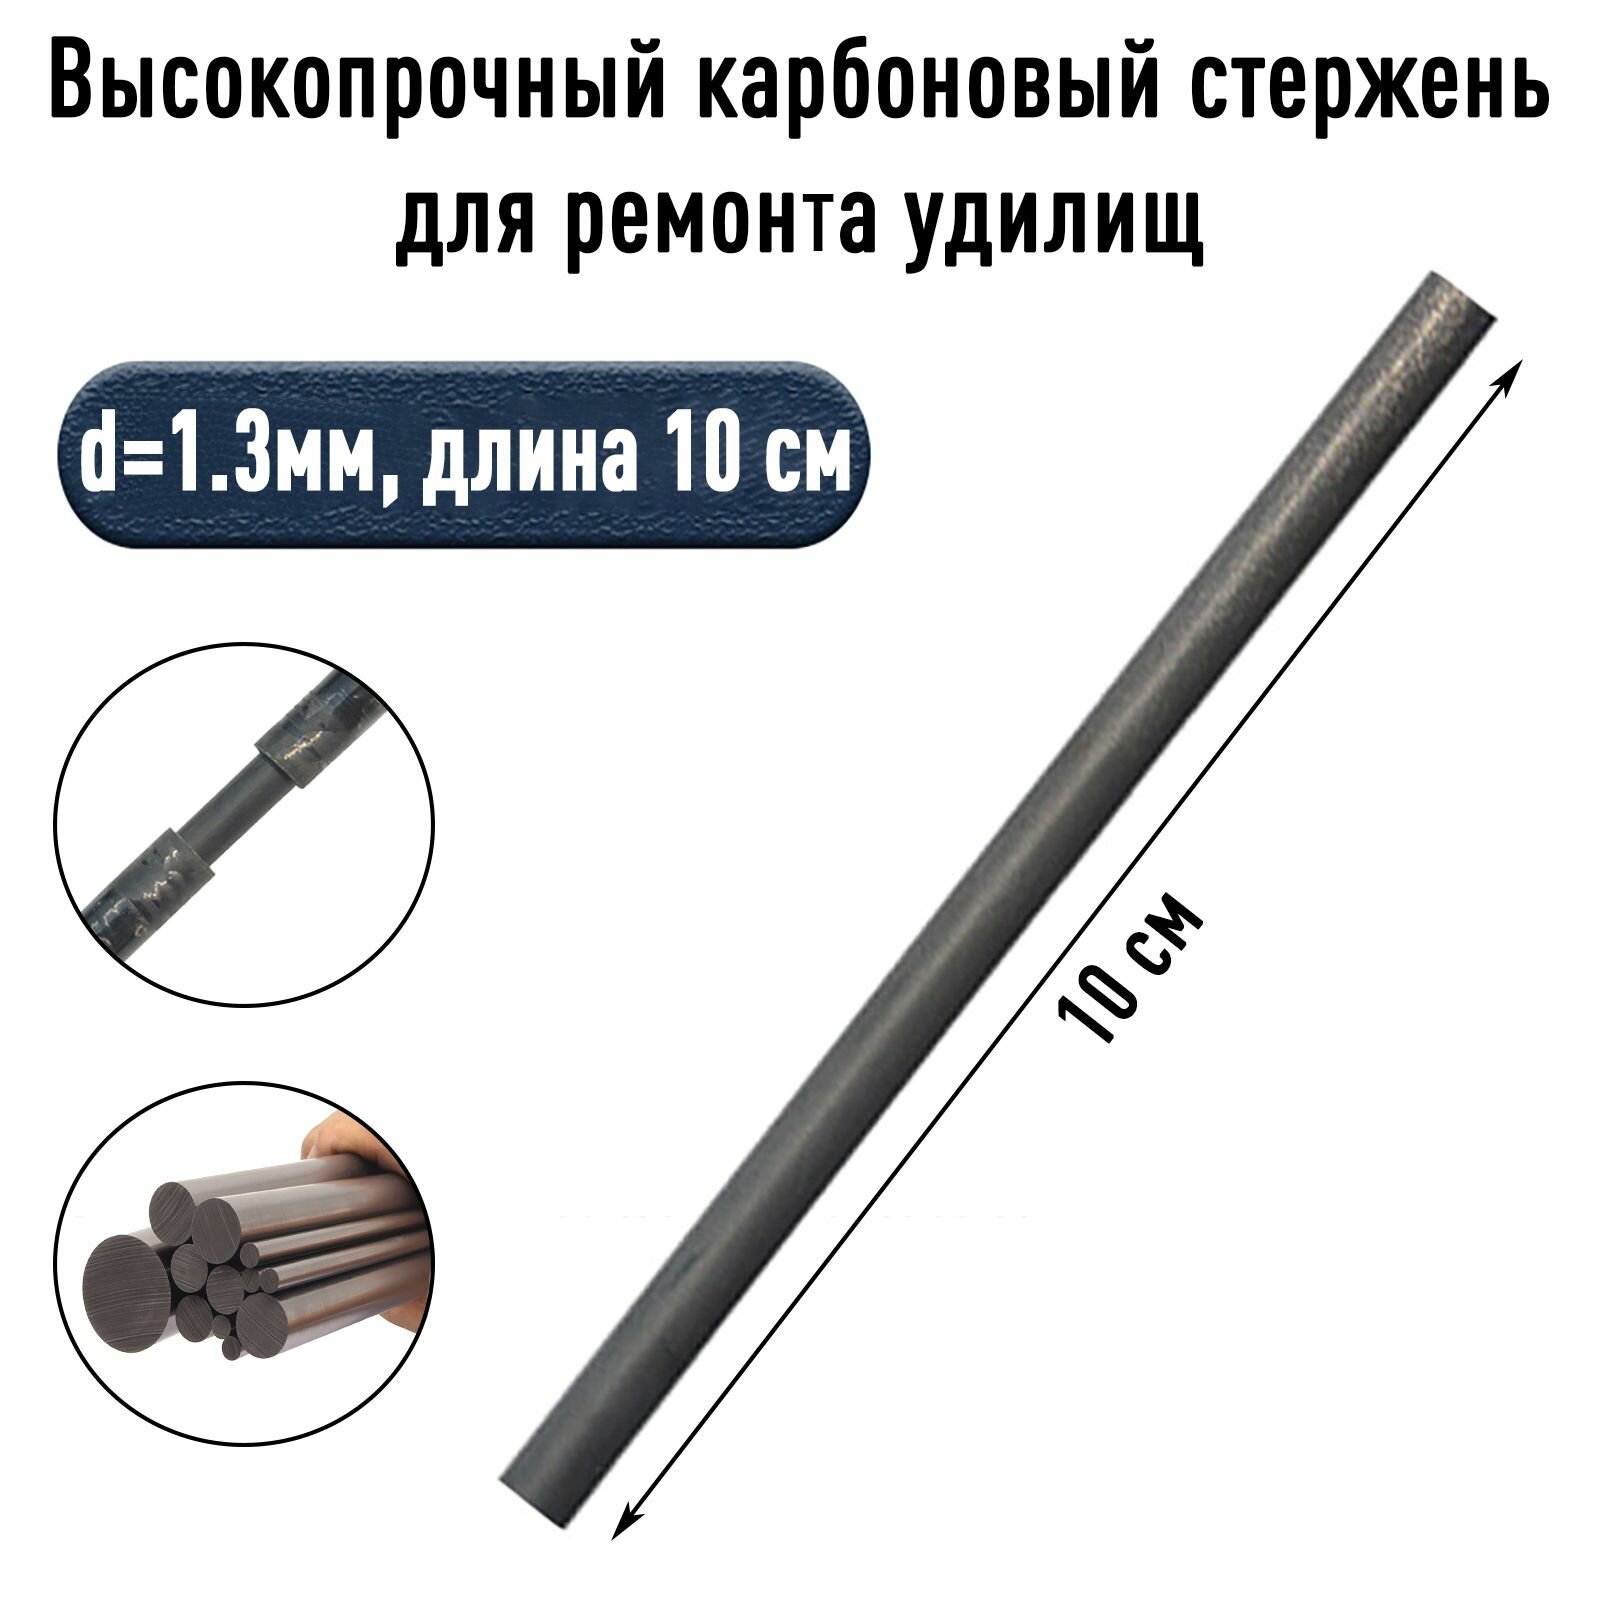 Ремонтный стержень для удилищ карбон d-1.3мм длина 10 см